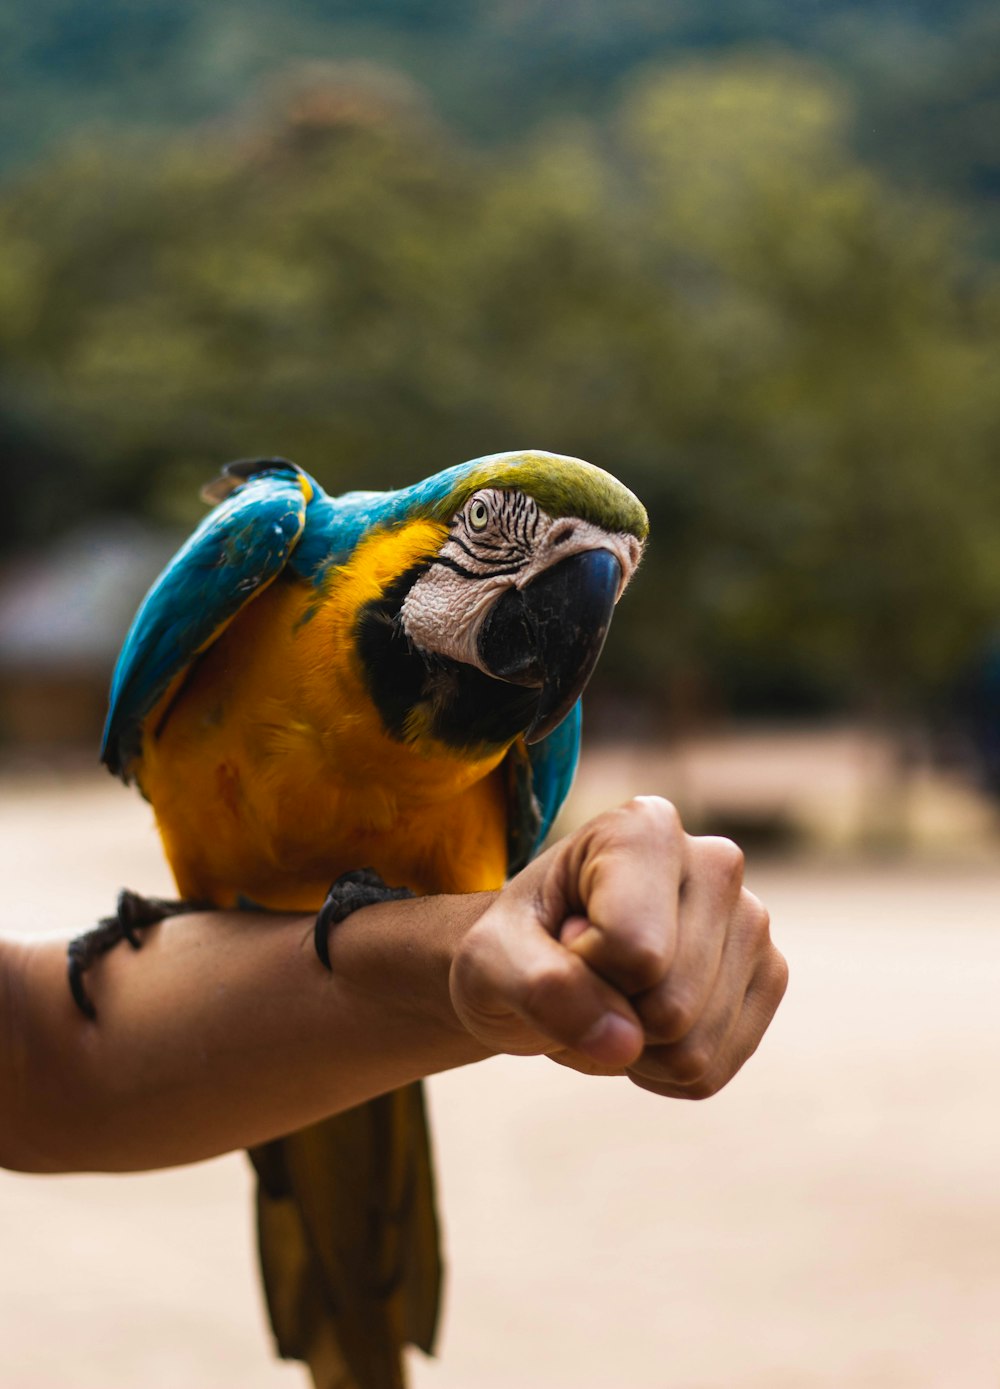 Orangefarbener, blauer und grüner Ara-Vogel sitzt auf der Hand einer Person